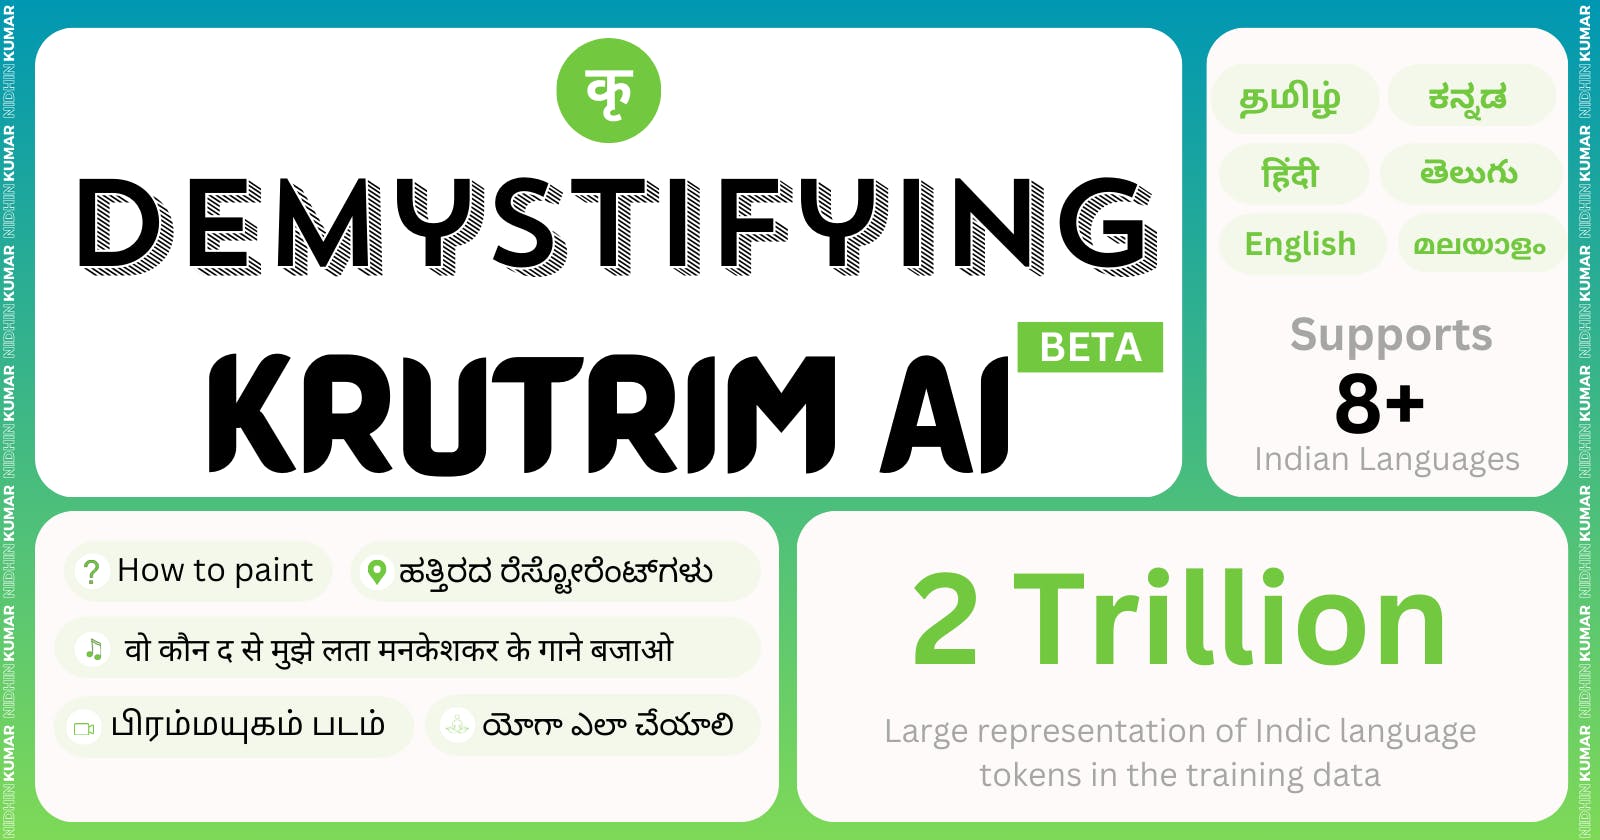 Demystifying Krutrim AI - India's own AI